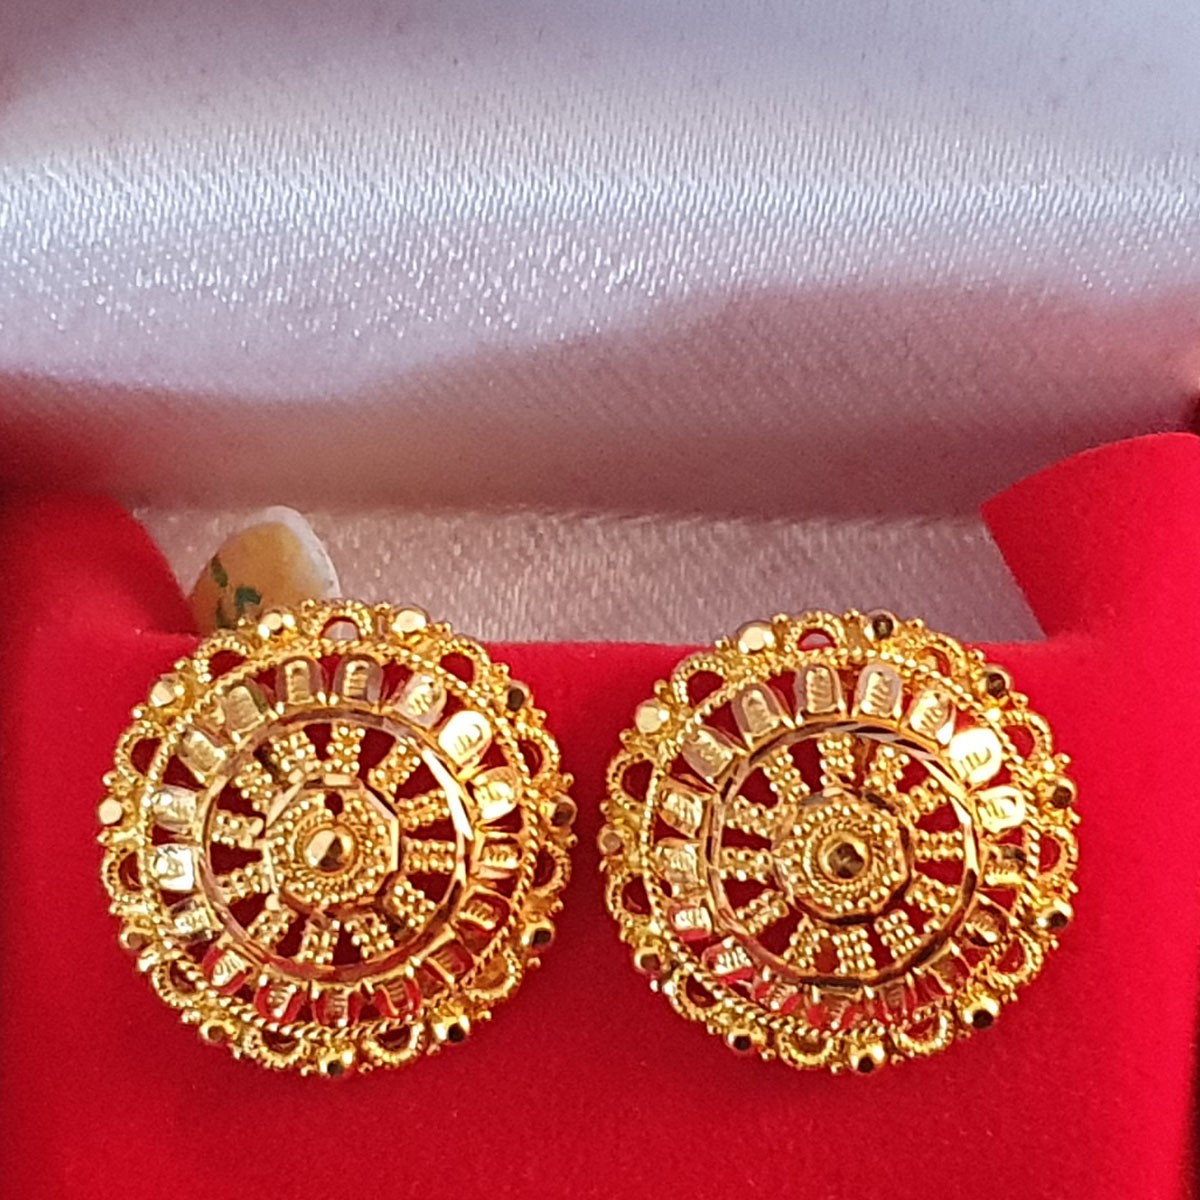 GJES030-22ct Gold Round studs - 22ct Gold Studs - 22ct Gold Earrings ...